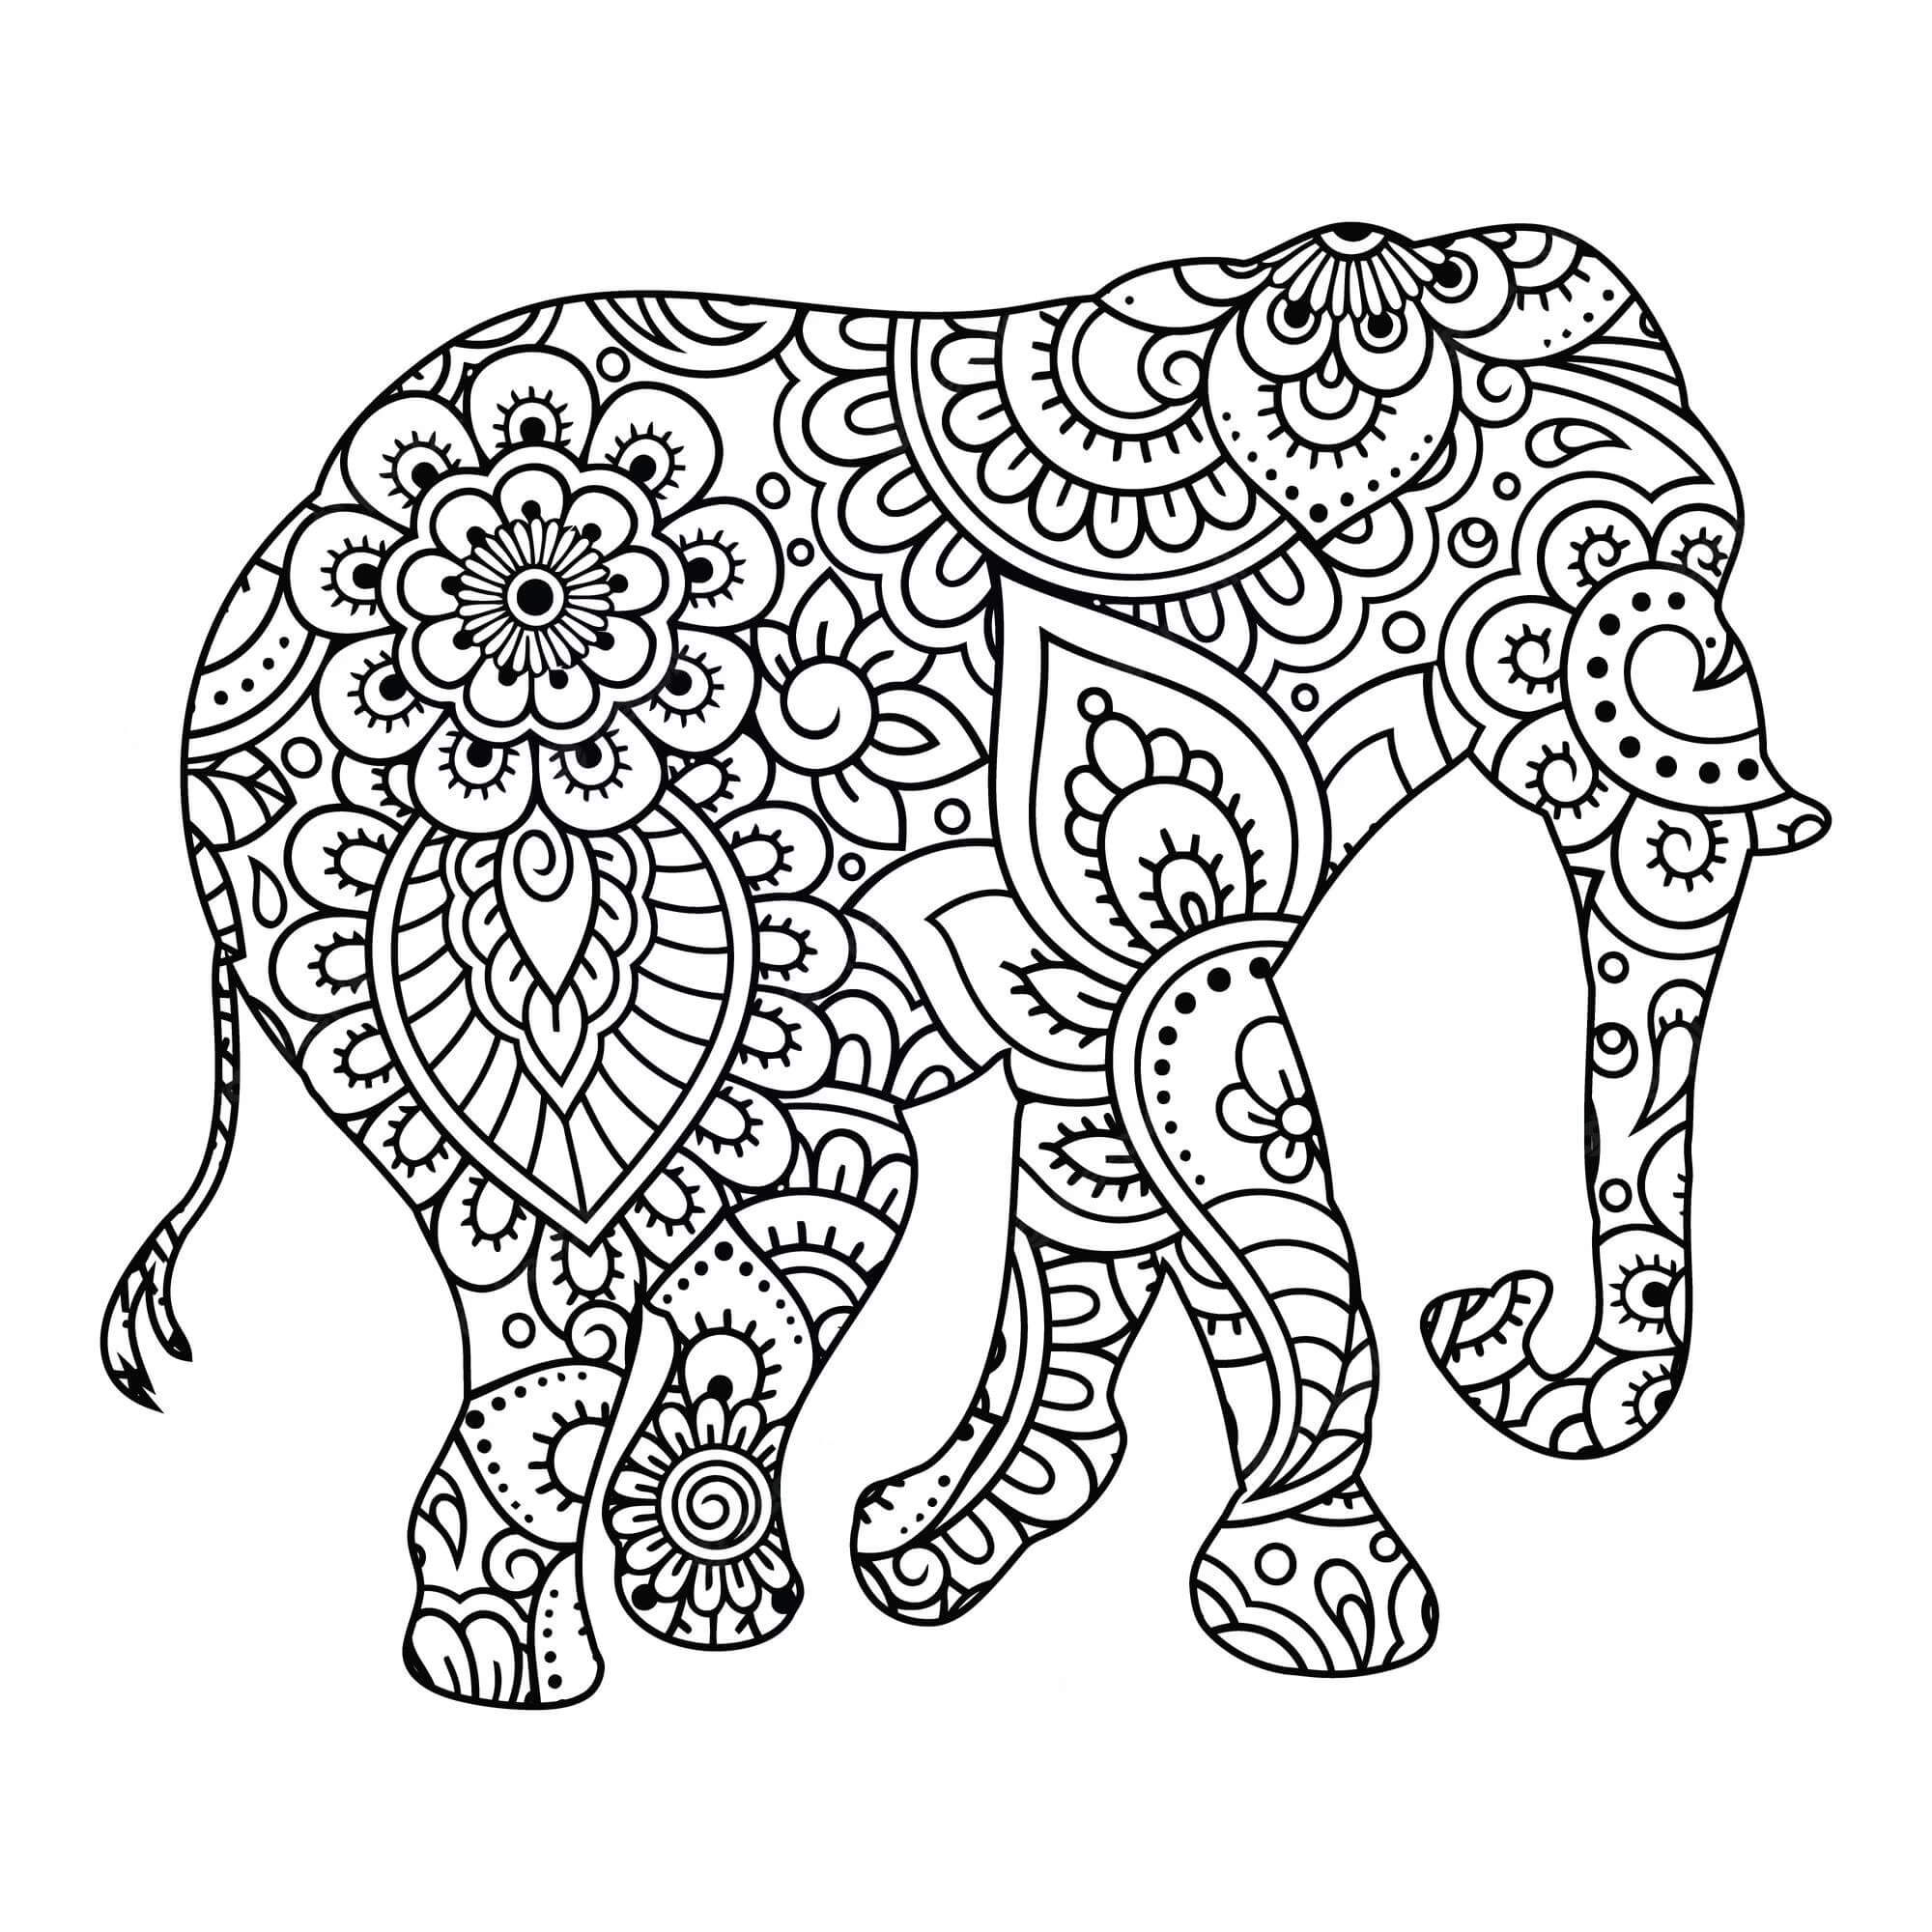 Mandala Elephant Coloring Page - Sheet 5 Mandalas